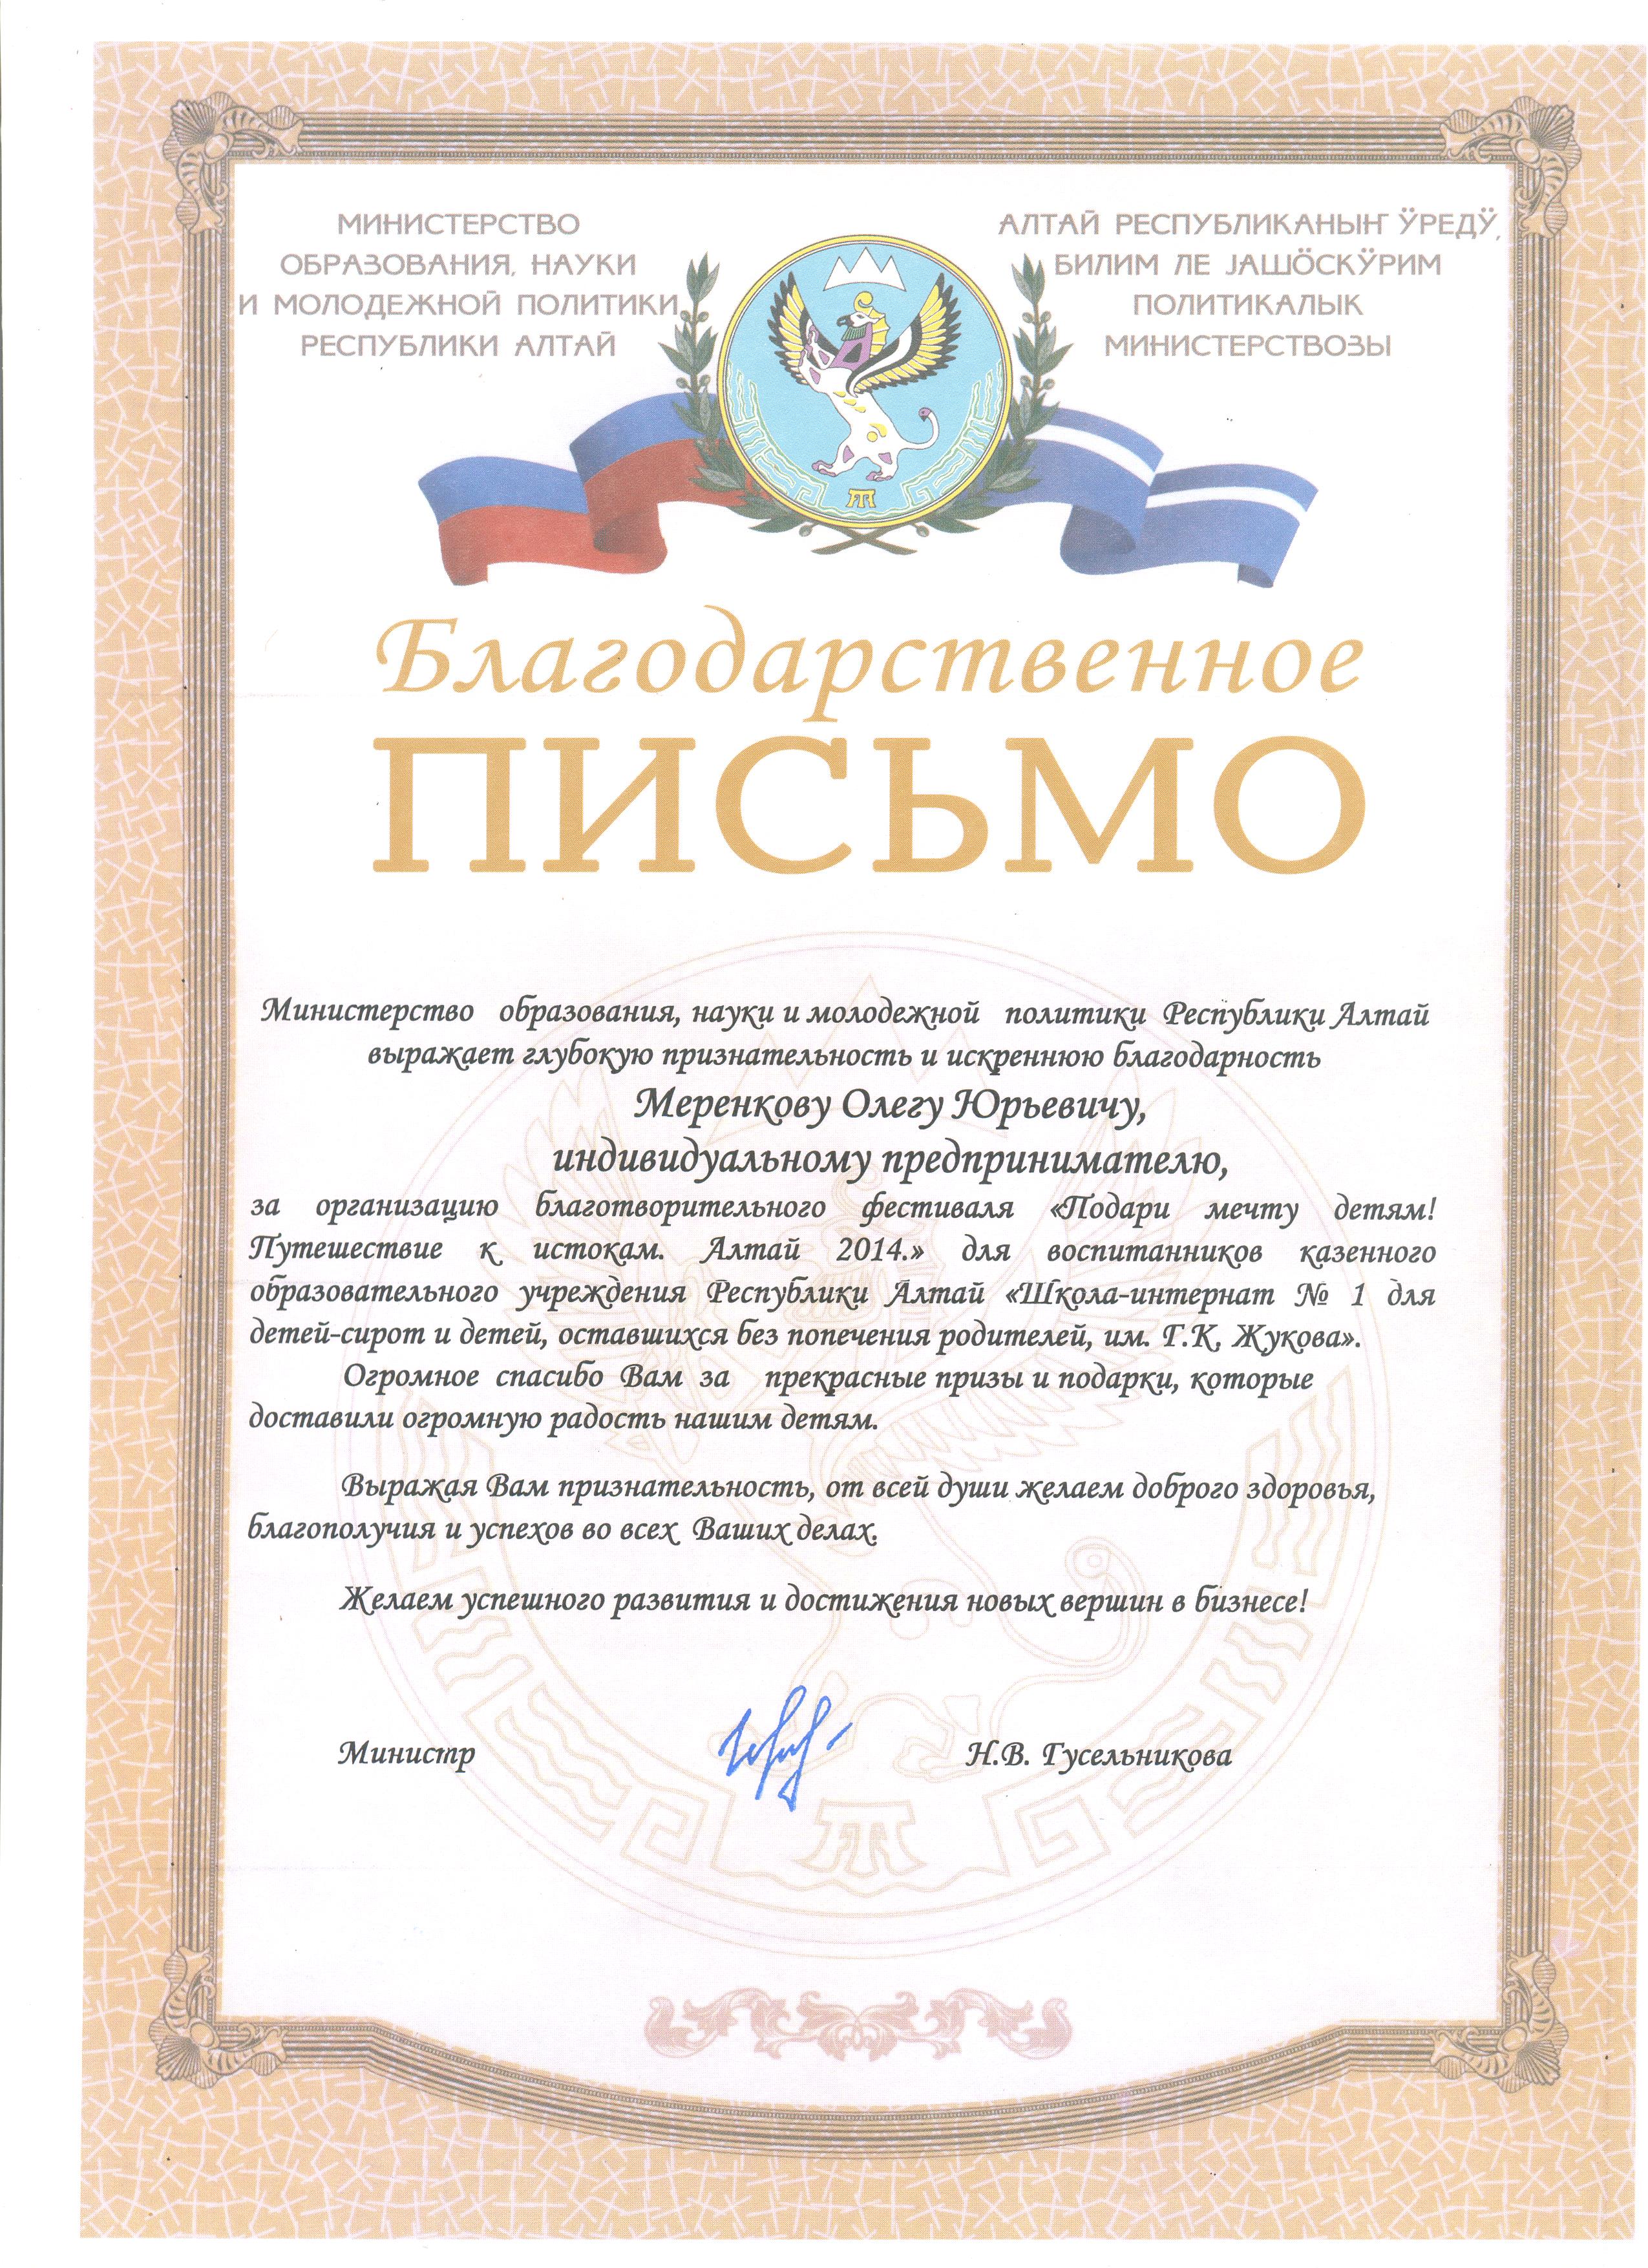 Благодарность от Министерства образования, науки и молодежной политики Республики Алтай